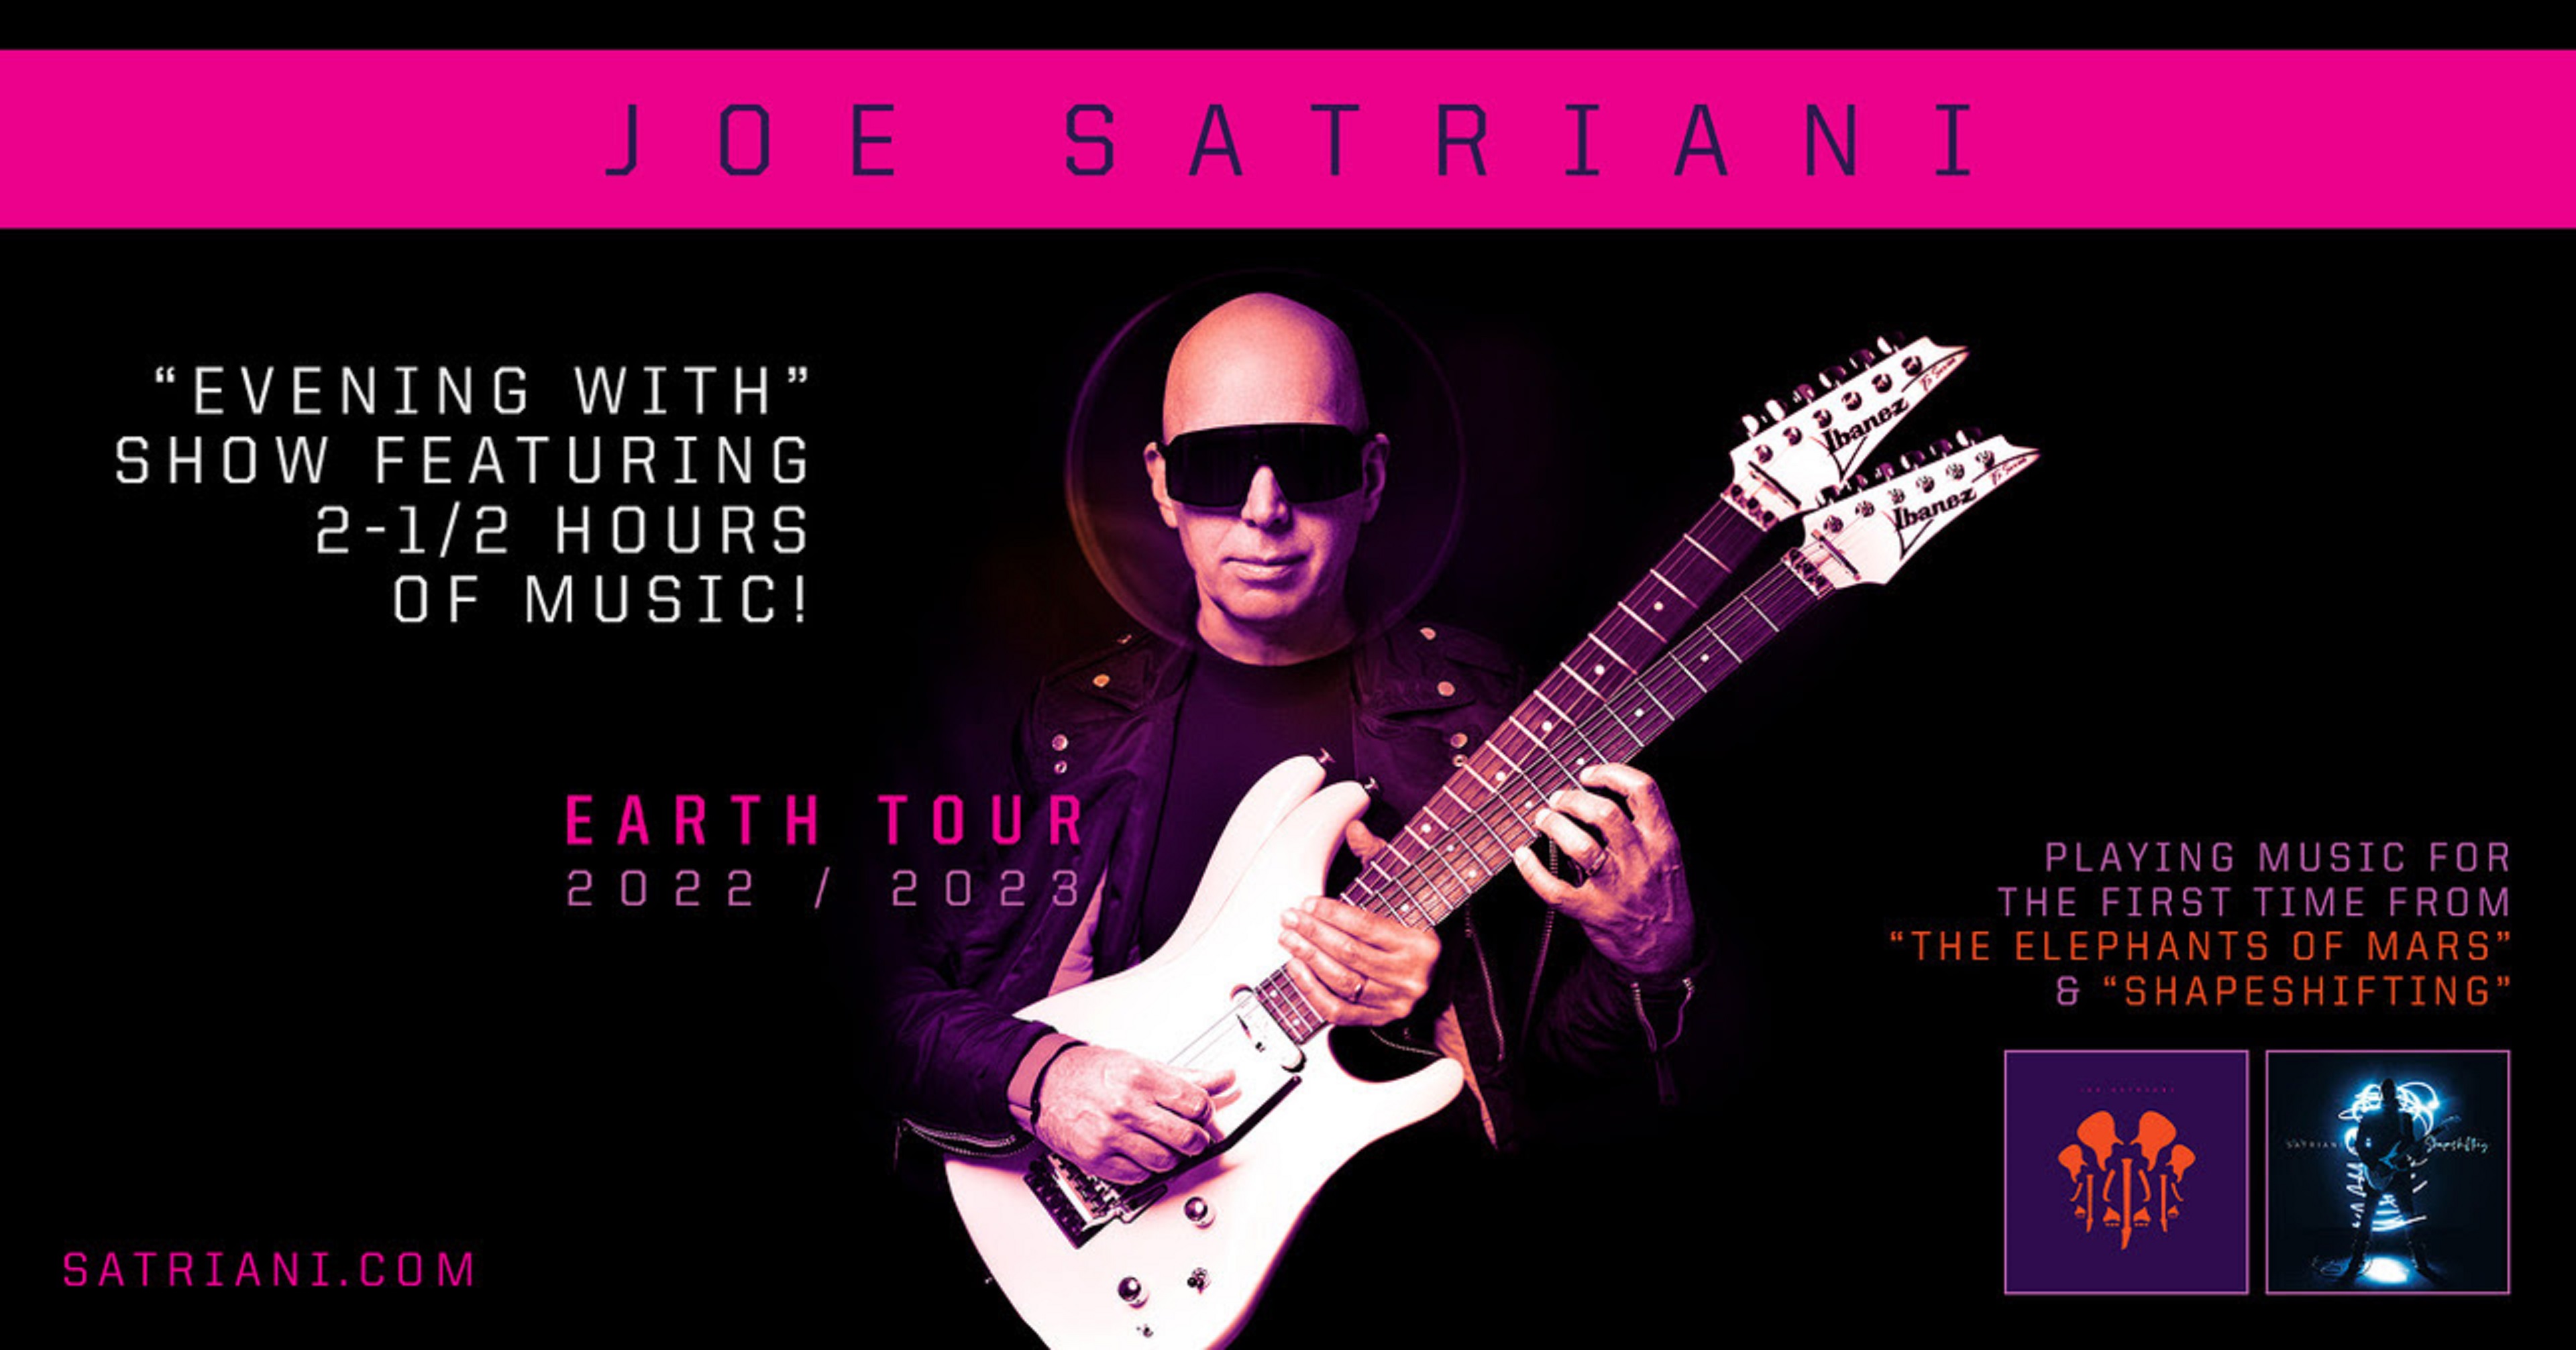 JOE SATRIANI ANNOUNCES U.S. 2022 "EARTH TOUR"